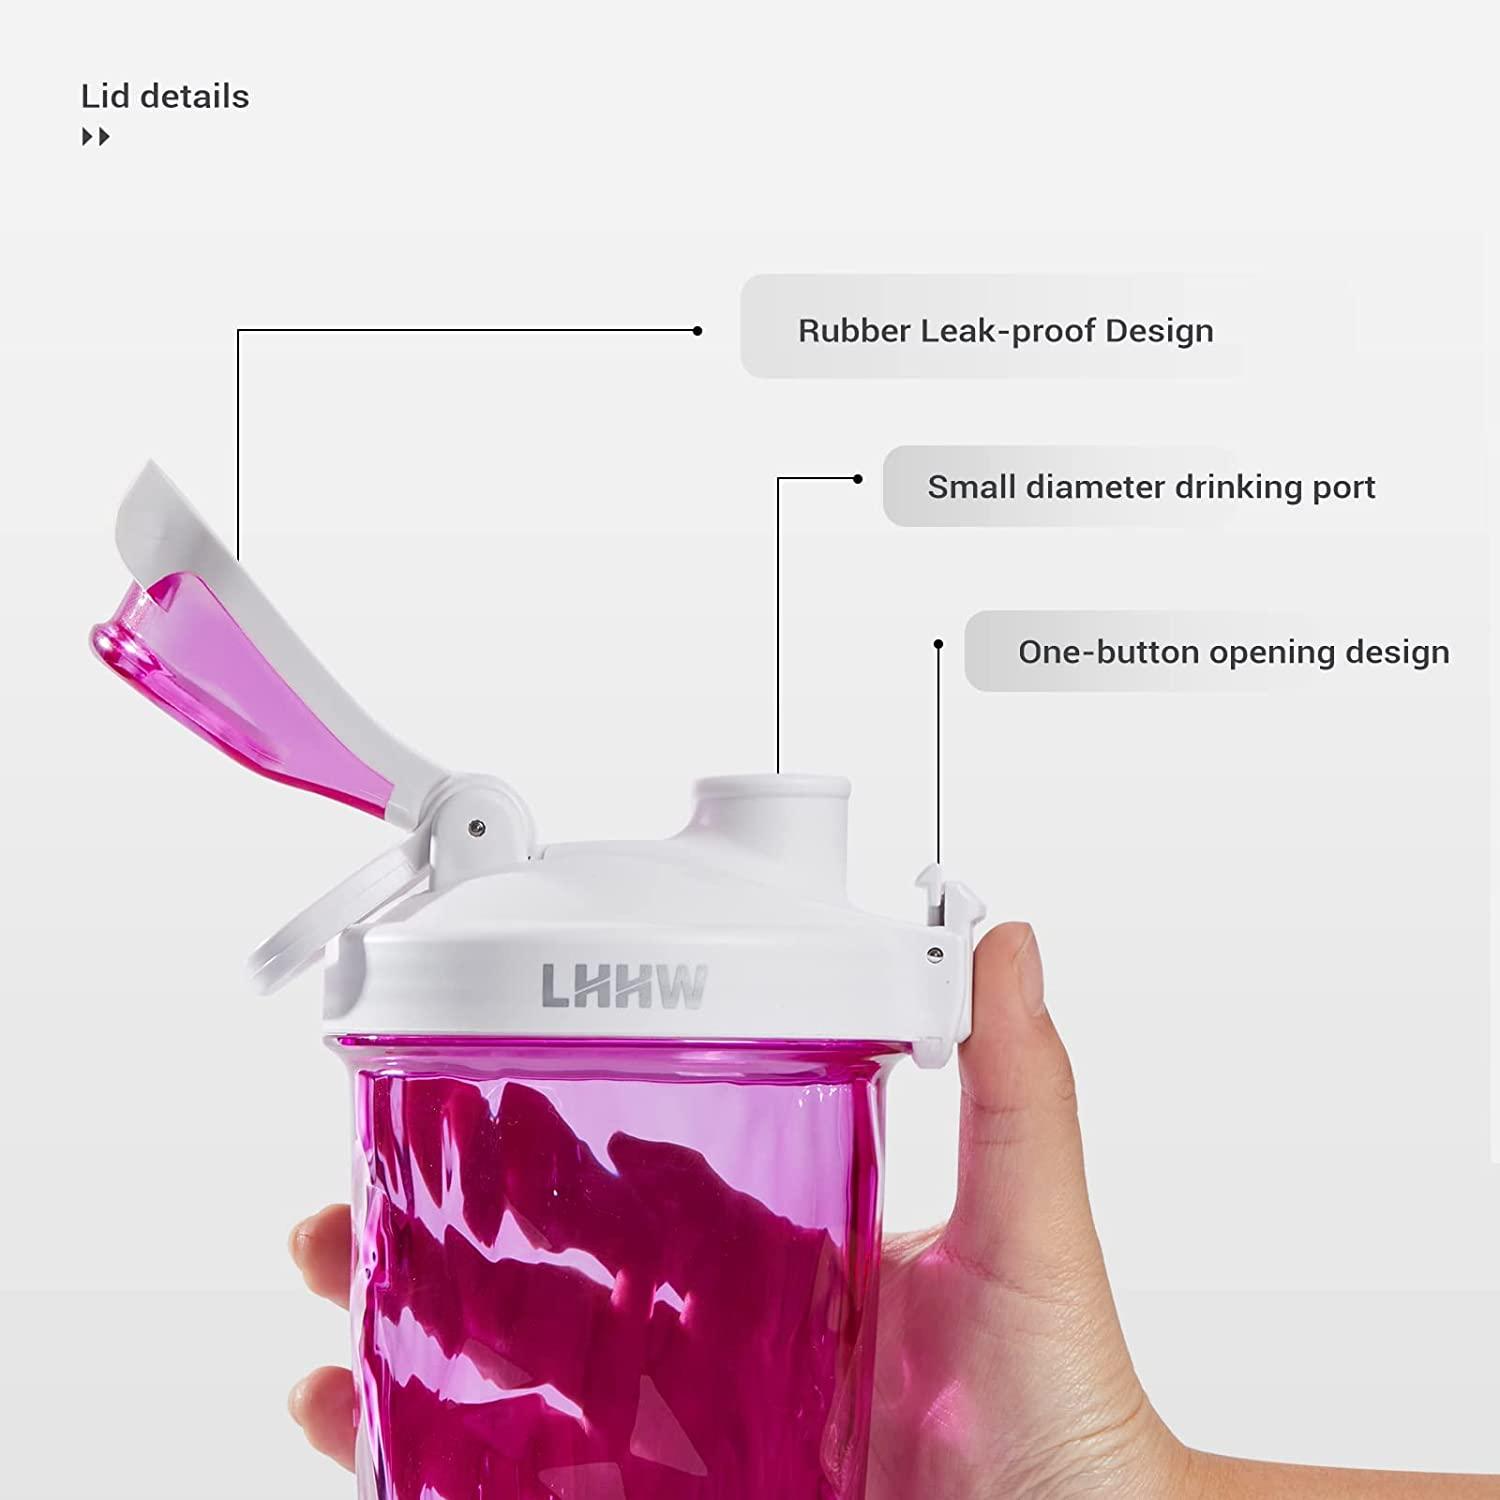 Cool Gear Protein Shaker, 24 oz, Custom Water bottles